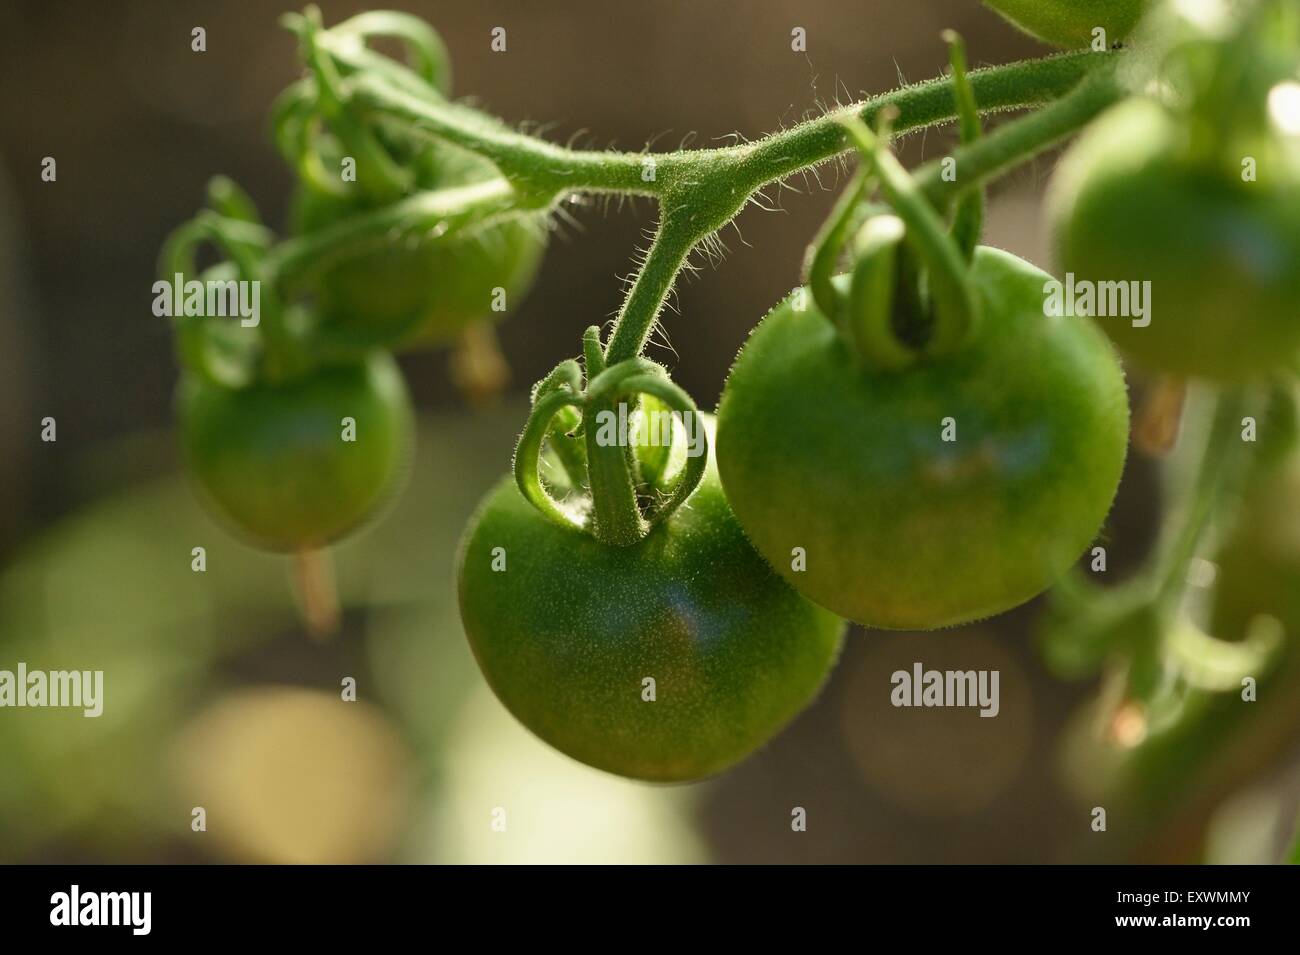 Les tomates sur une plante verte Banque D'Images